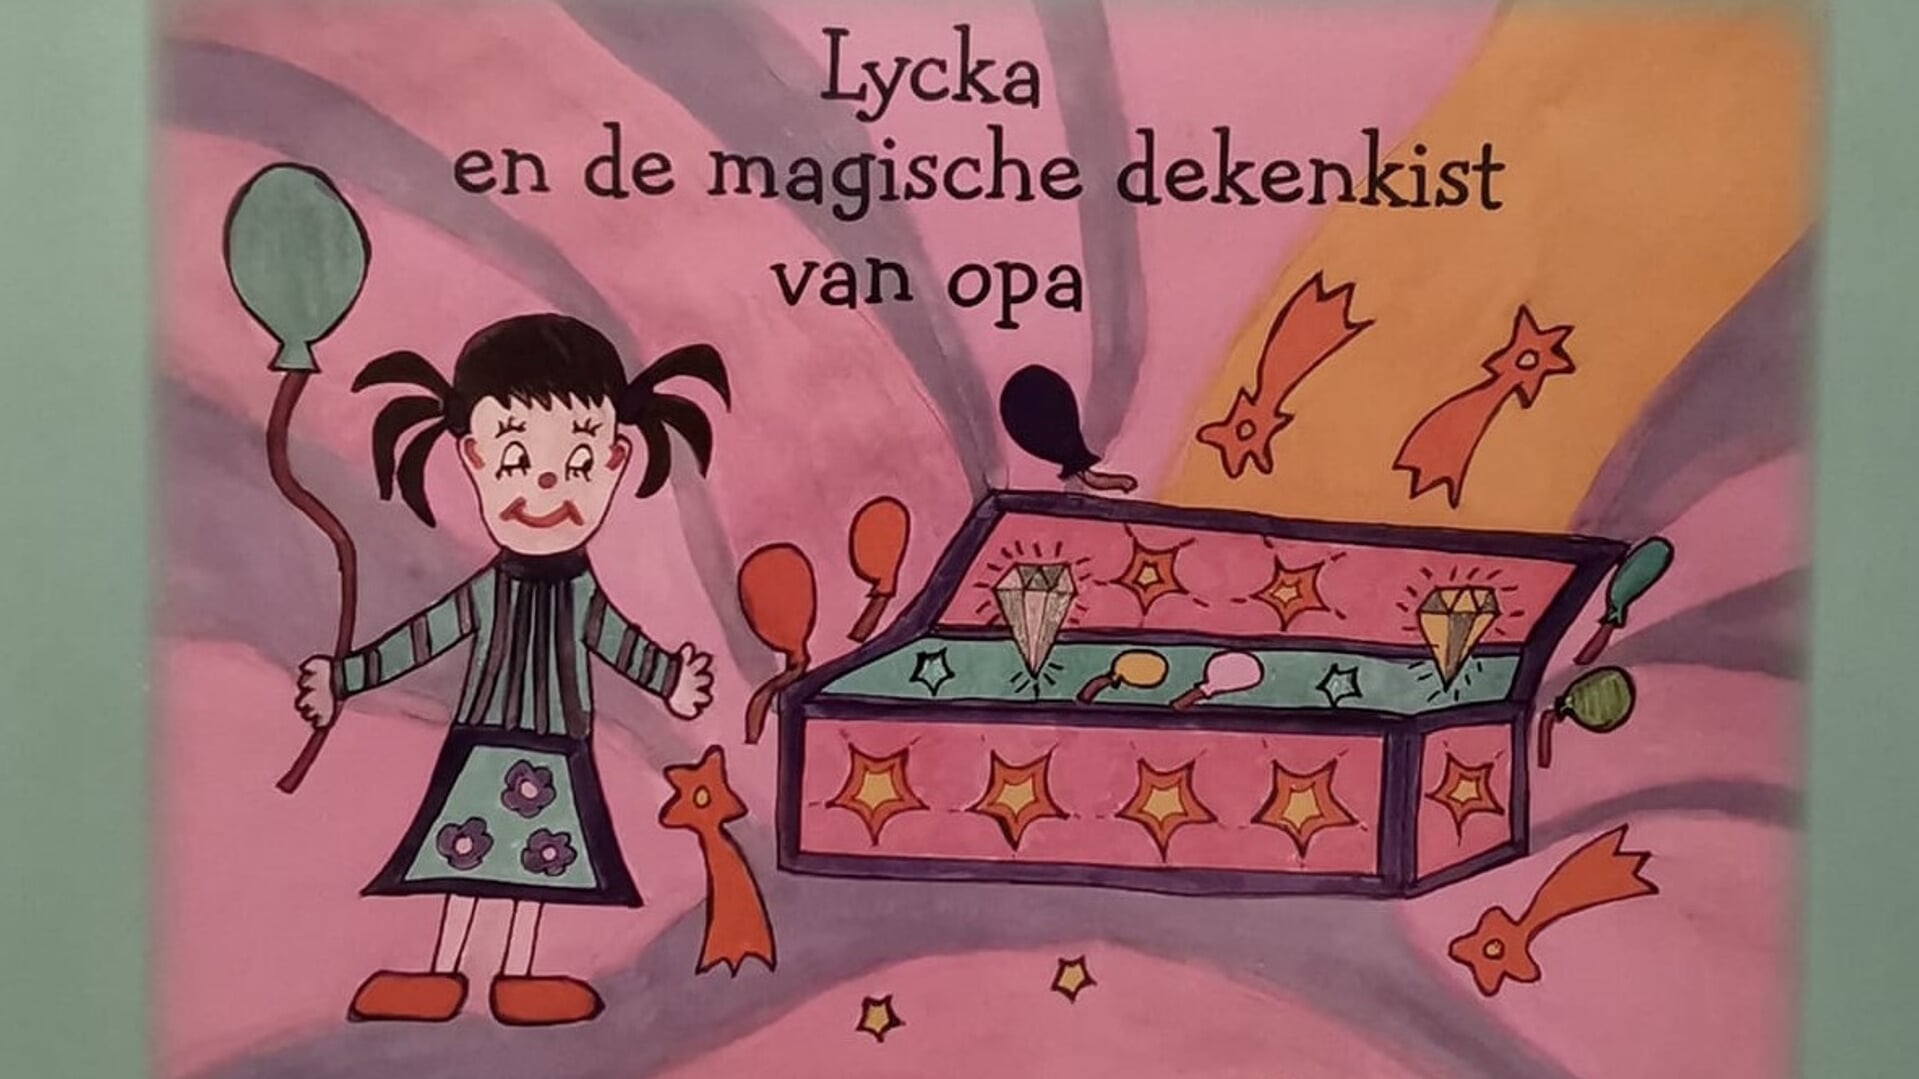 De cover van 'Lycka en de magische dekenkist van opa'.